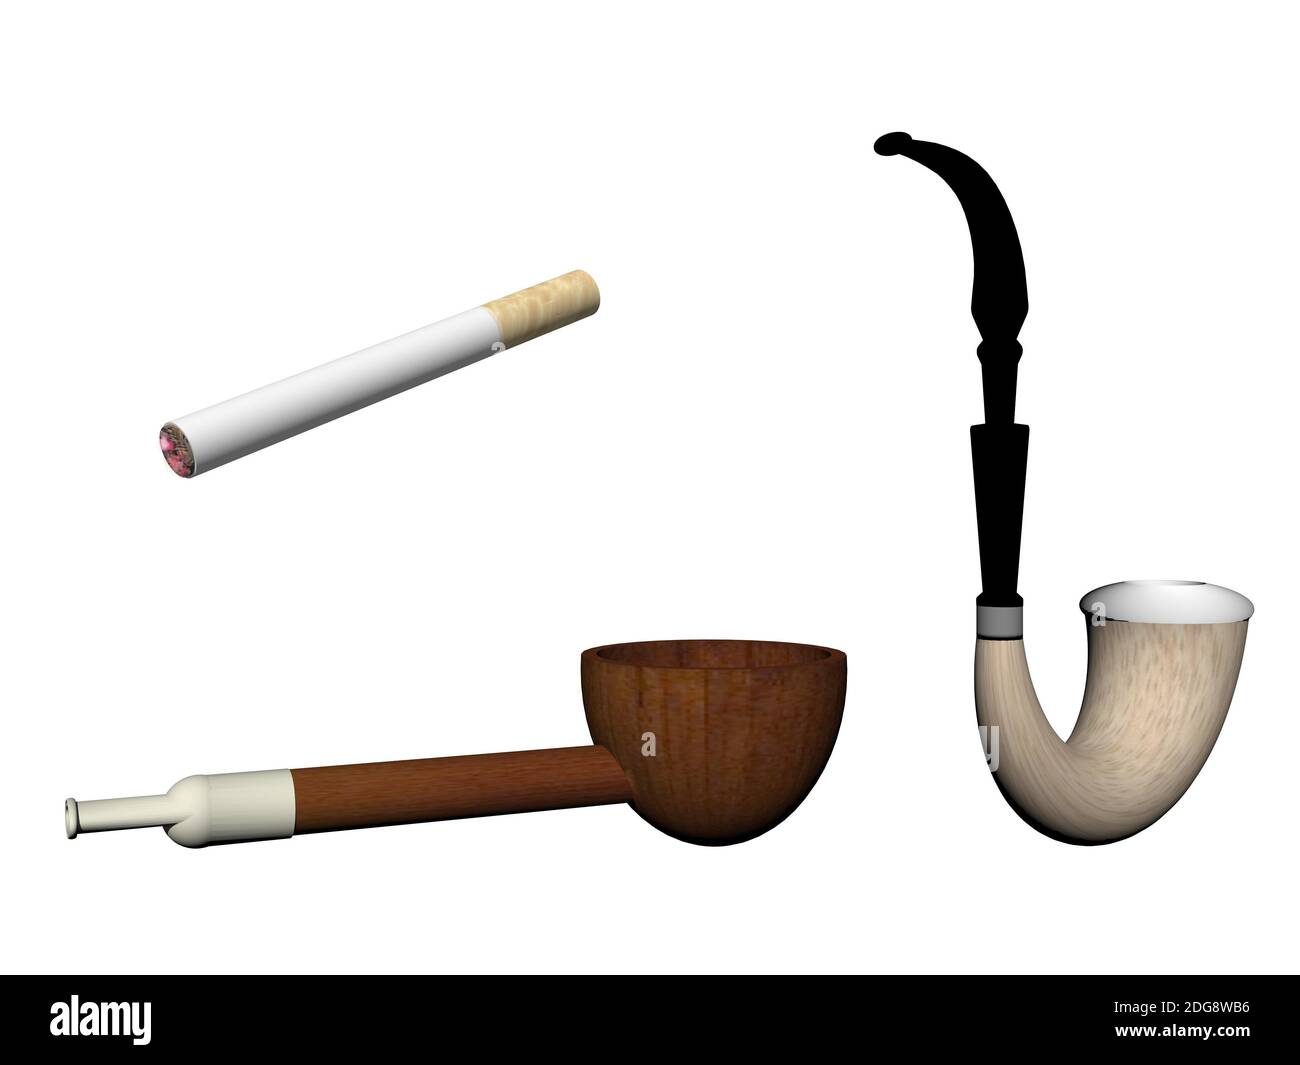 Tabakpfeife auf weißem Hintergrund gelötet - 3d-Rendering Stockfoto